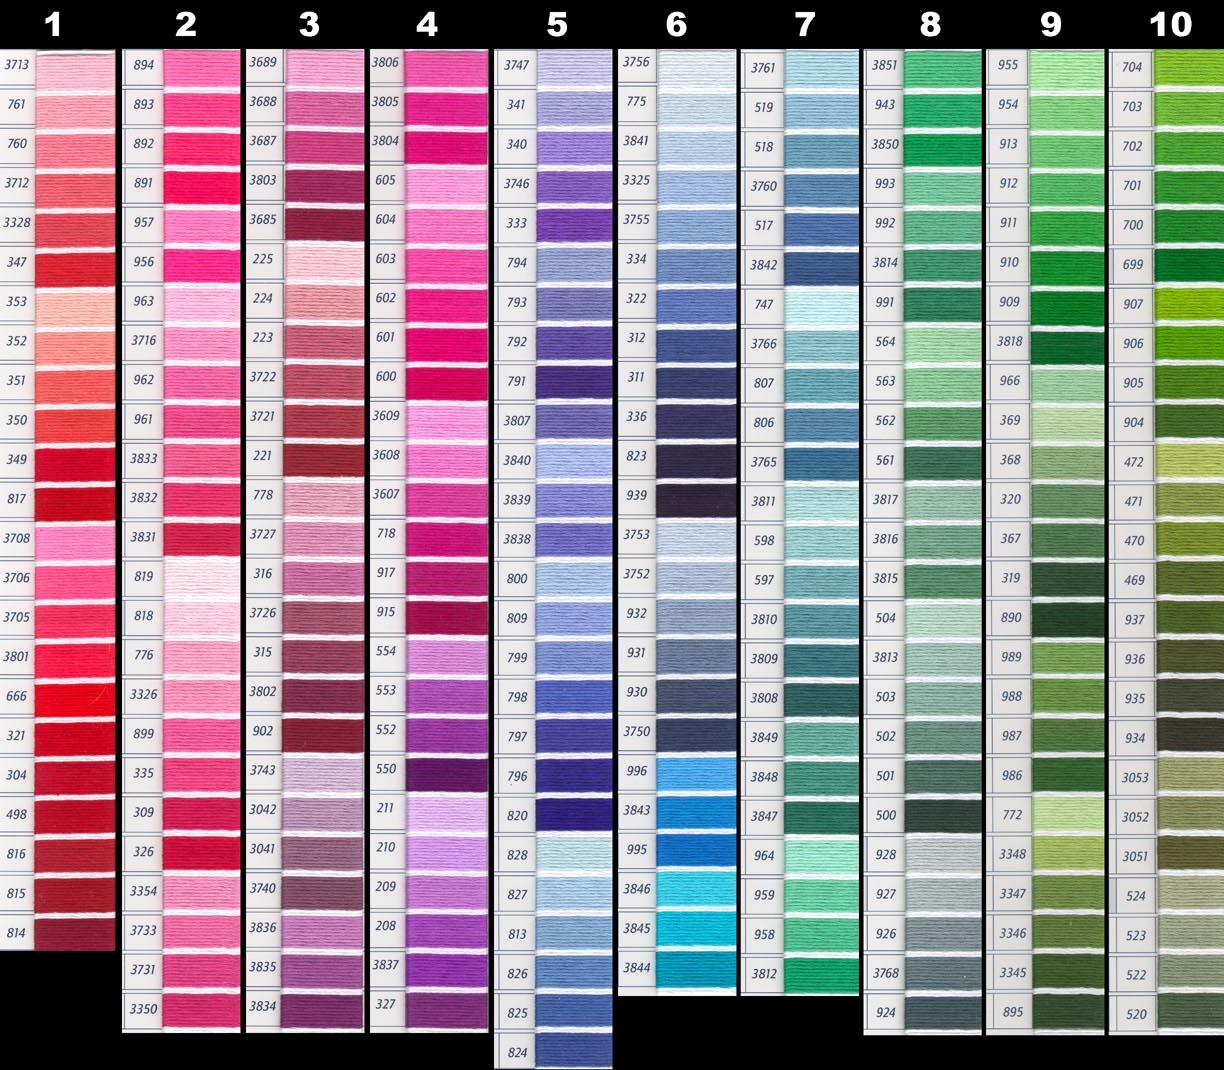 Fashion Colour Chart